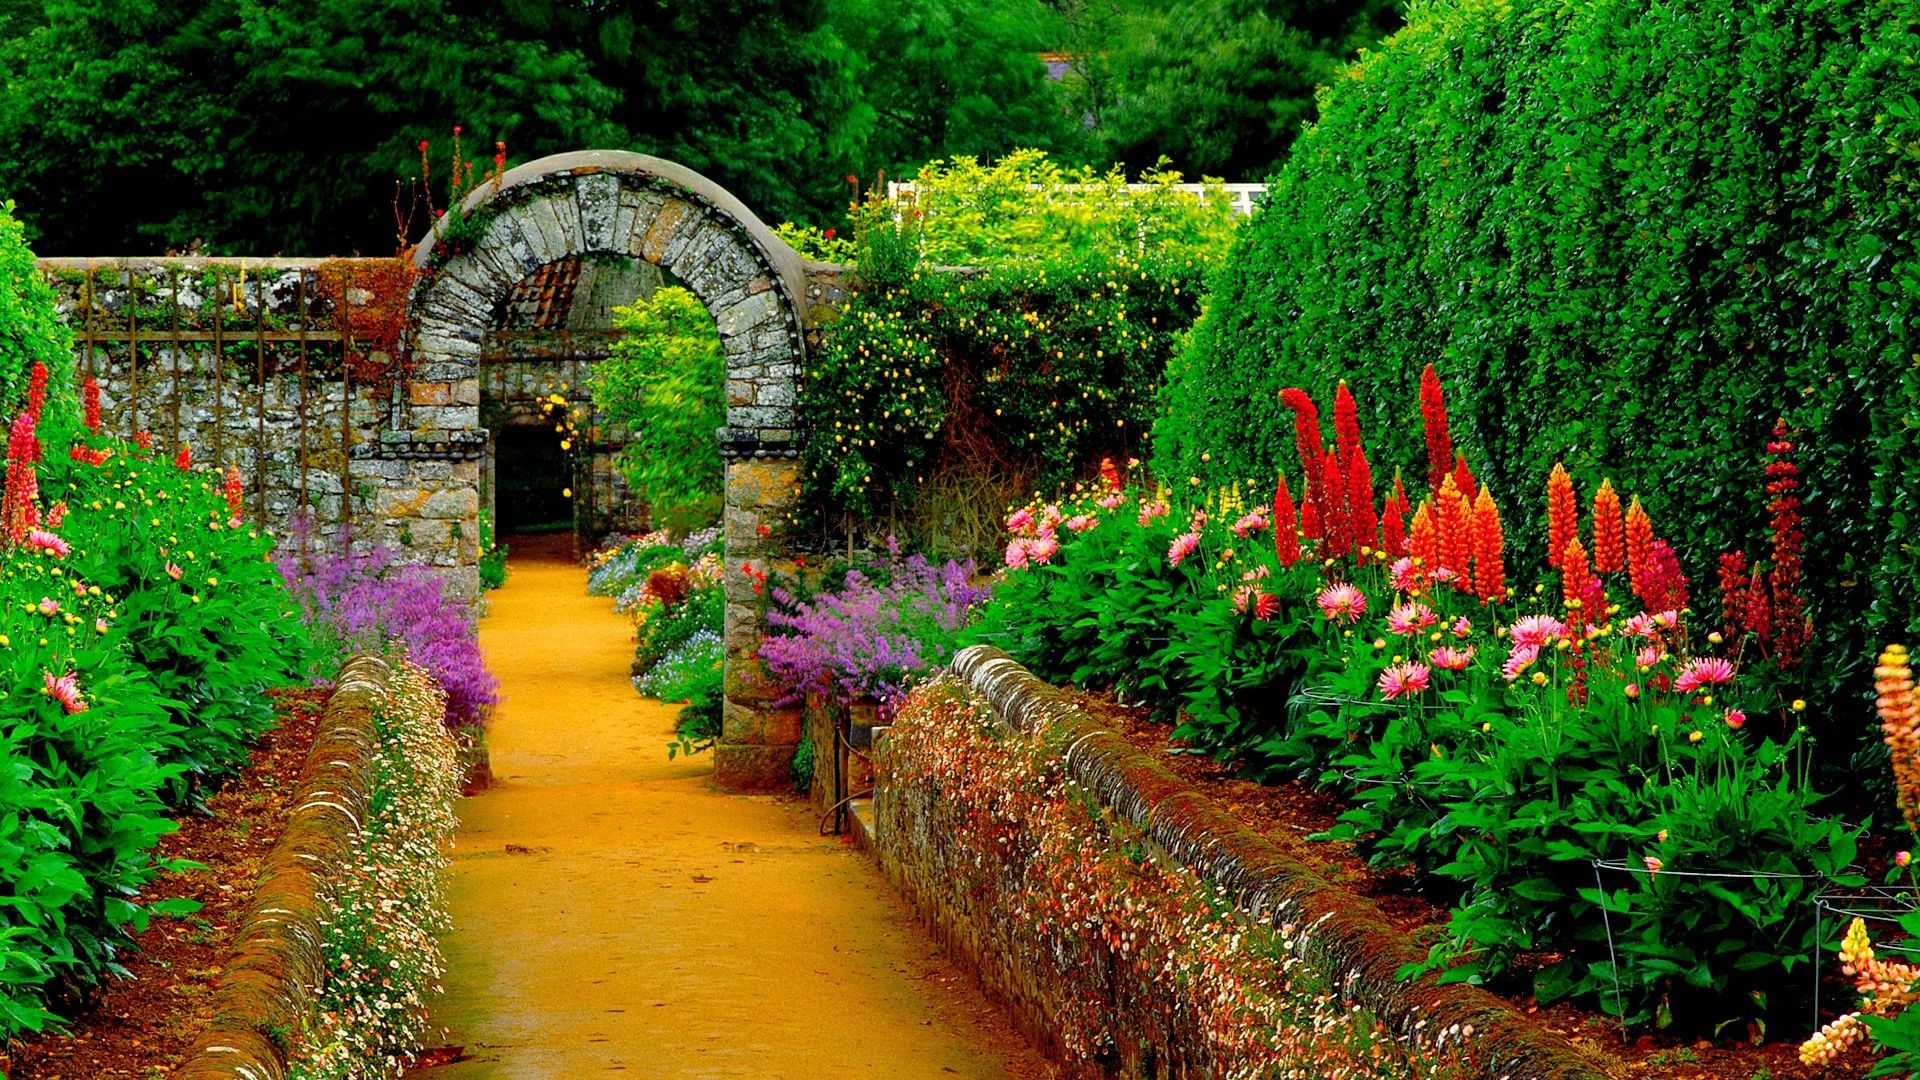 HD garden wallpaper, Gorgeous pictures, Beautiful gardens, Amazing scenes, 1920x1080 Full HD Desktop